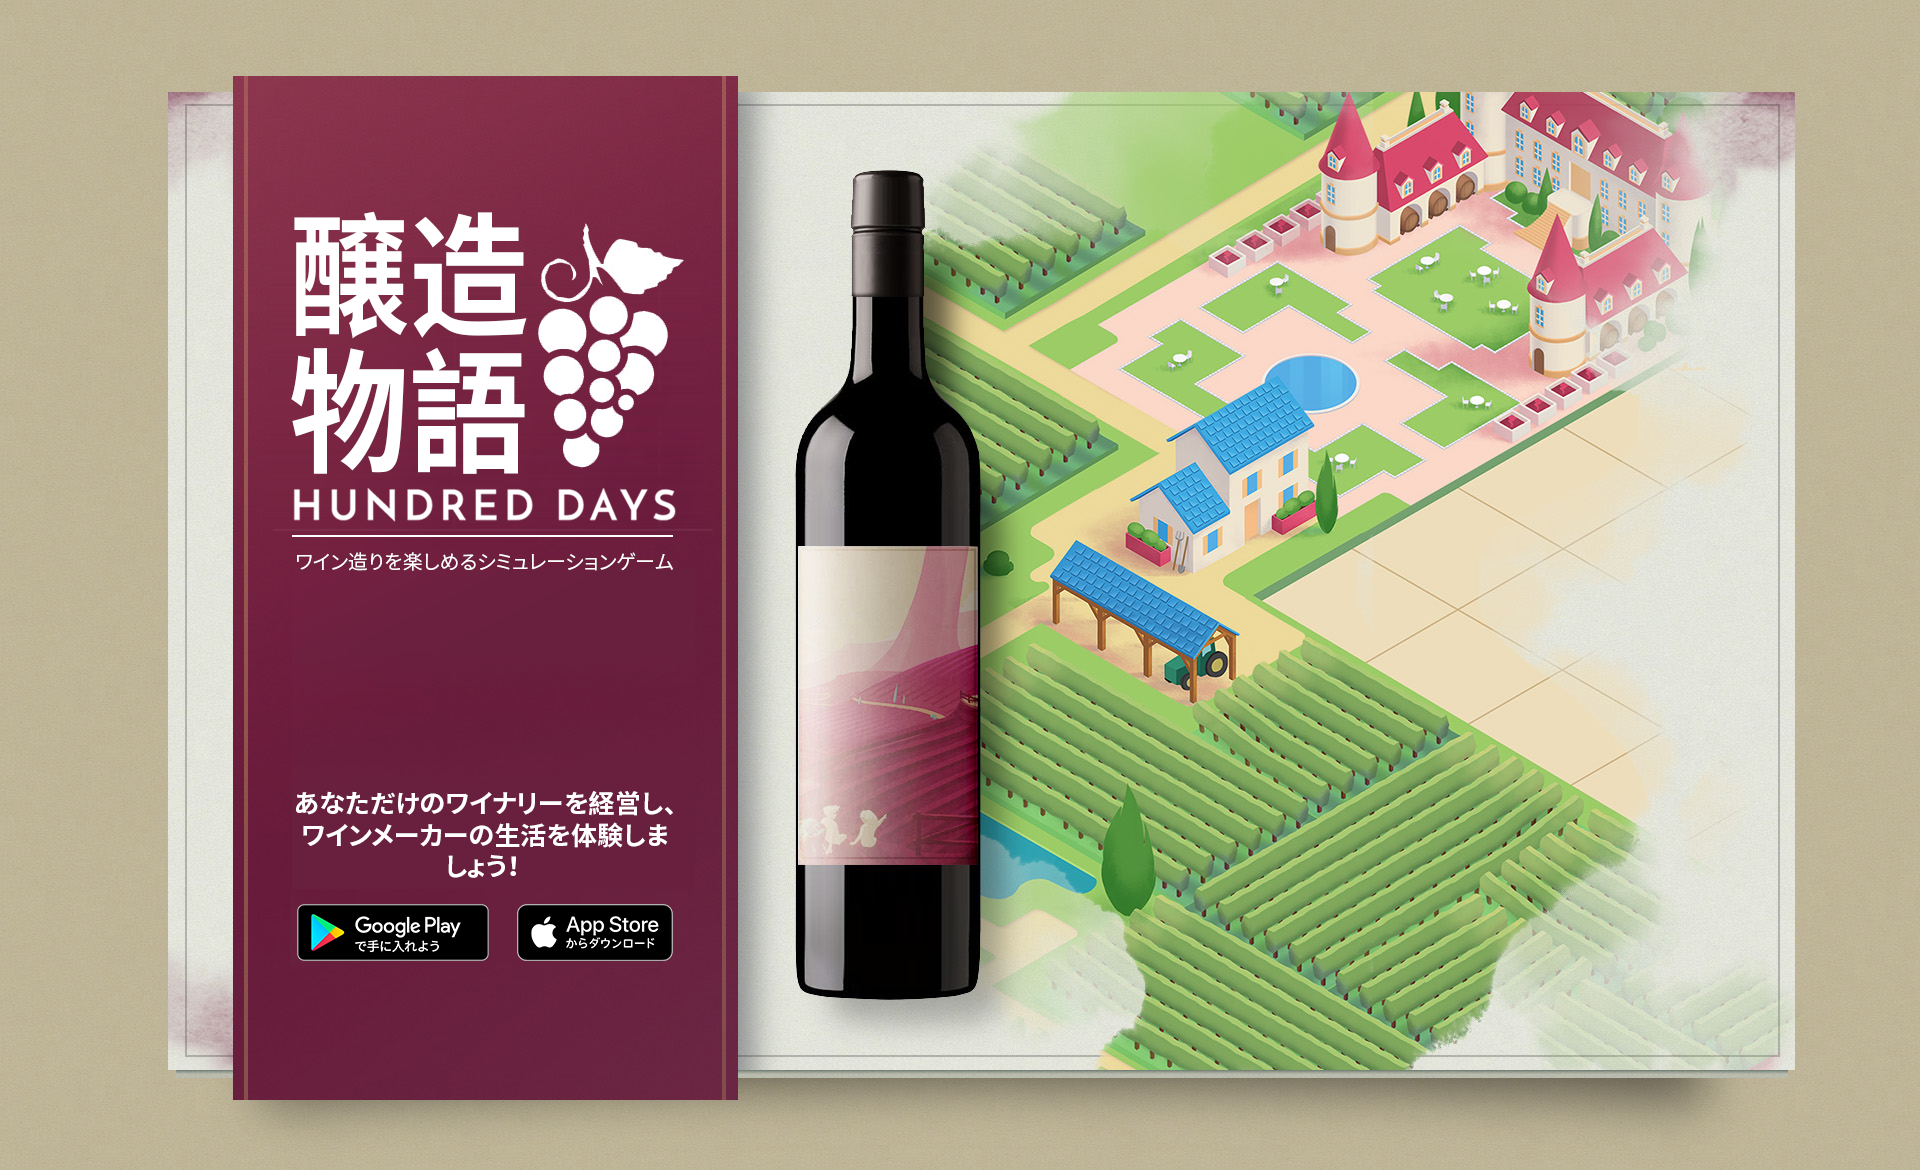 ワイン造りを楽しめるシミュレーションゲーム 醸造物語 Hundred Days のモバイル版が配信開始 ワイナリーを経営して ワイン 醸造にまつわる全工程を体験しよう Nuverseのプレスリリース